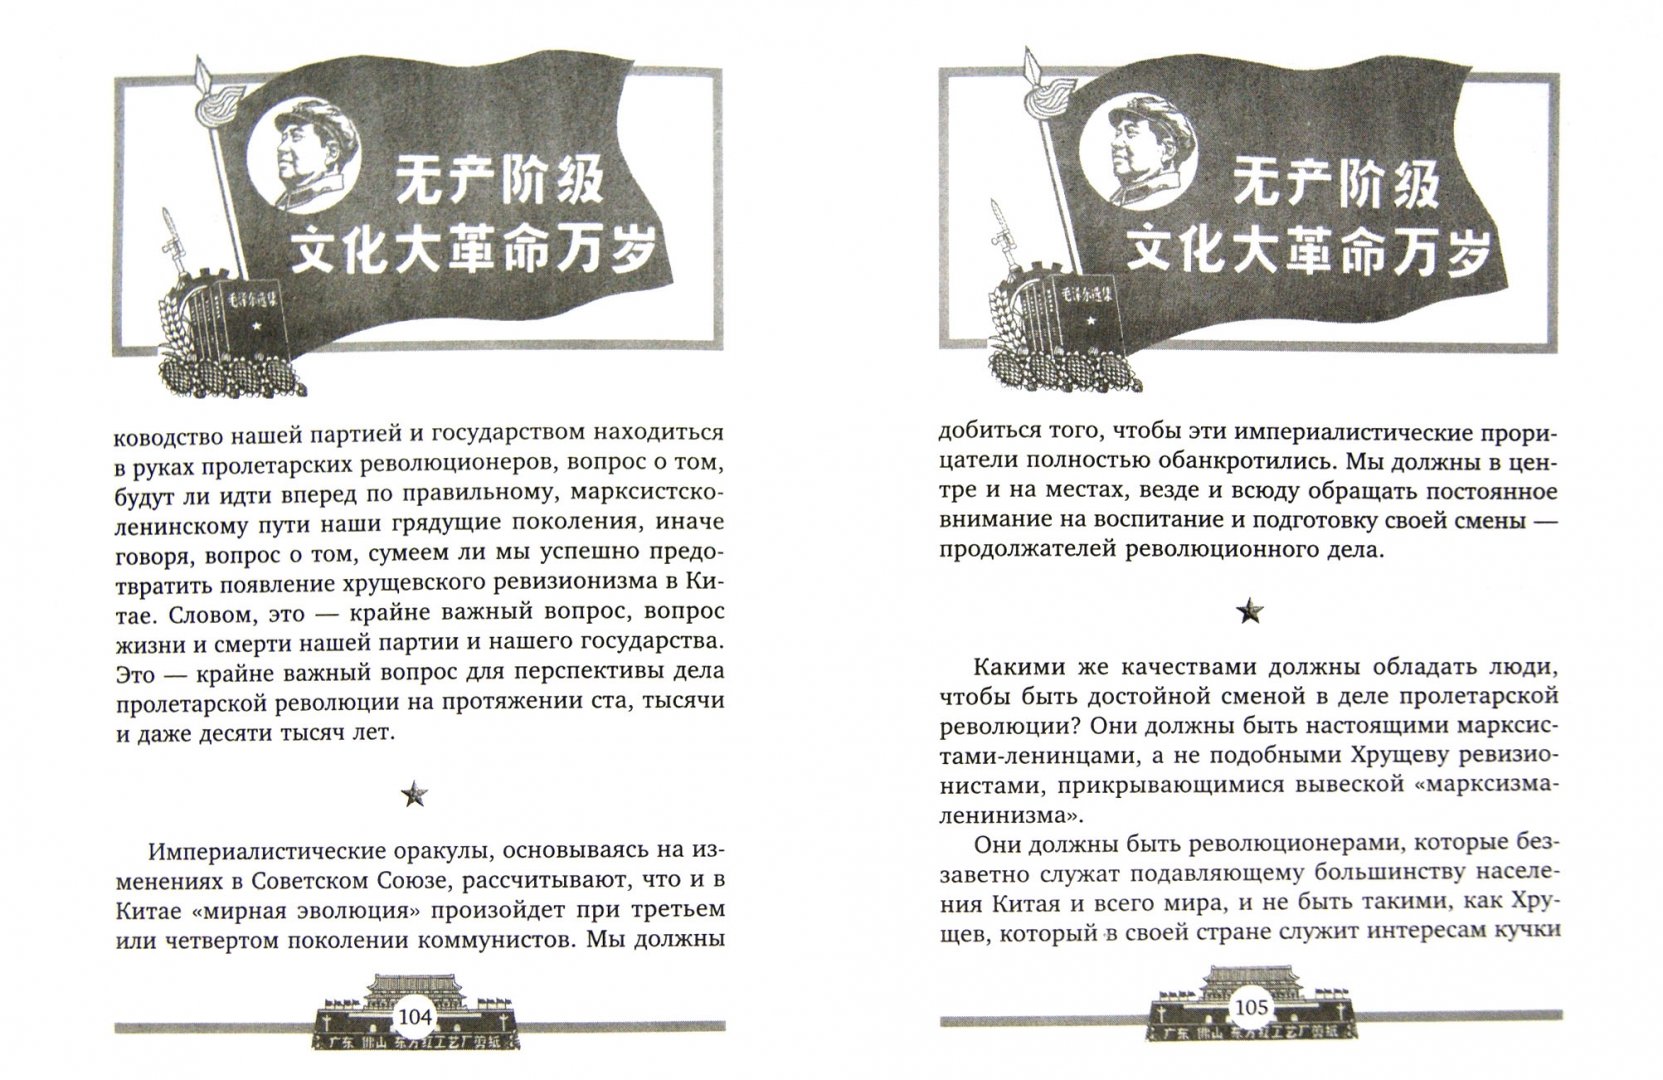 Иллюстрация 1 из 8 для Великий кормчий Мао Цзэдун. Не бояться трудностей, не бояться смерти - Мао Цзэдун | Лабиринт - книги. Источник: Лабиринт